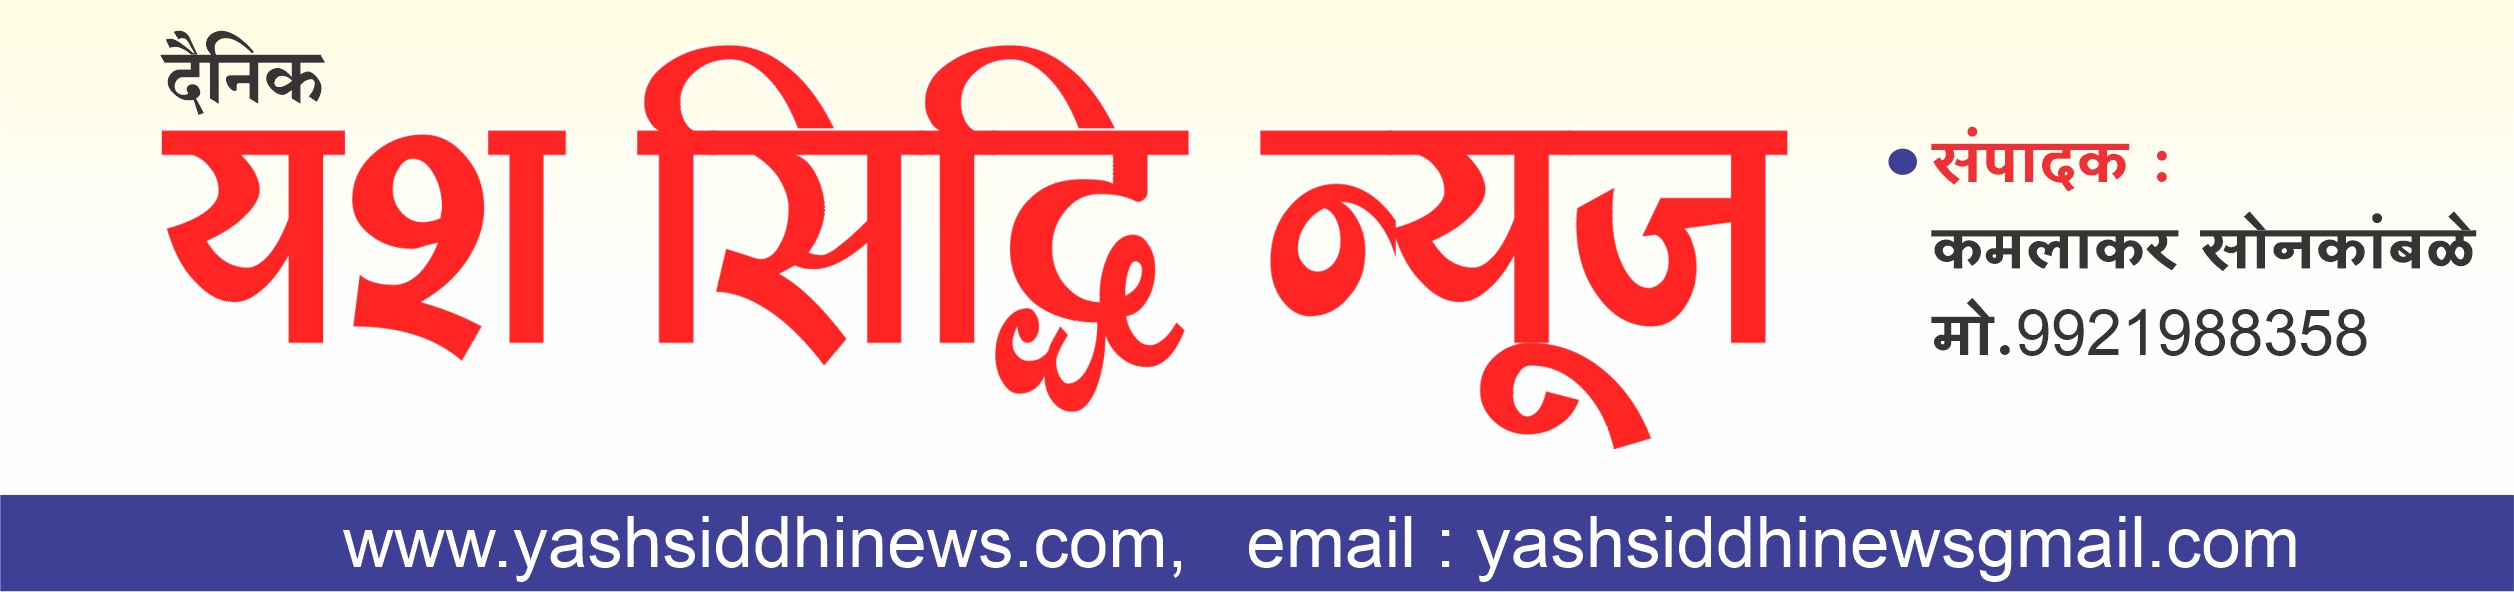 Yash Siddhi News